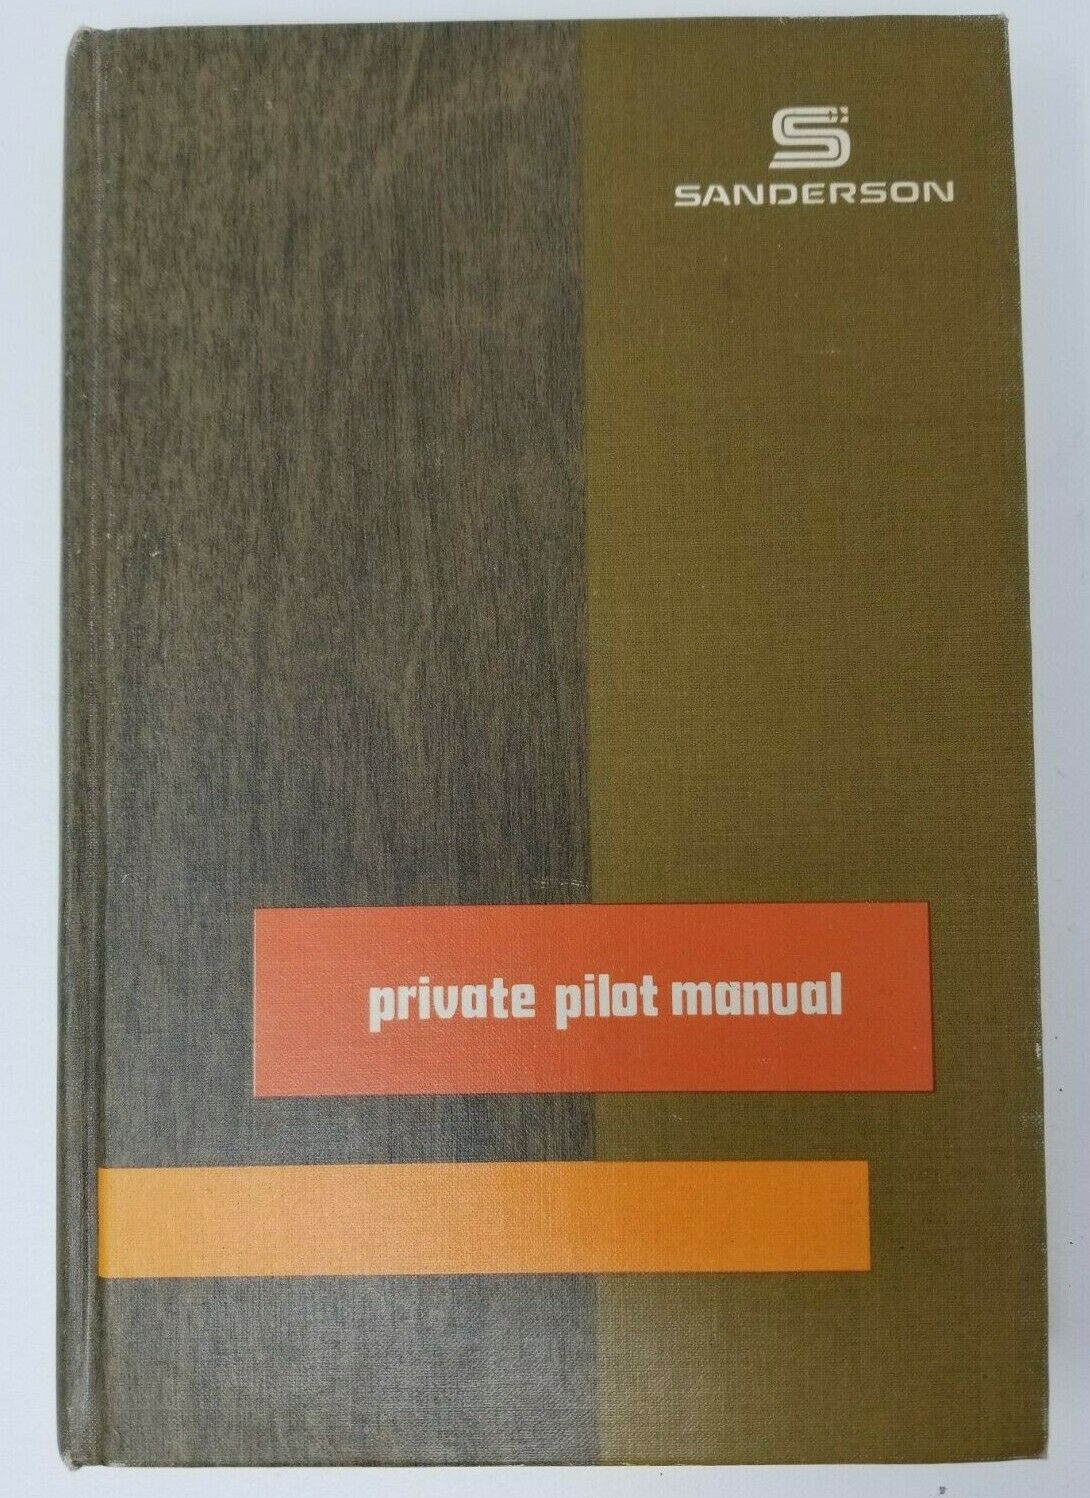 Sanderson Private Pilot Manual 1975 Vintage 